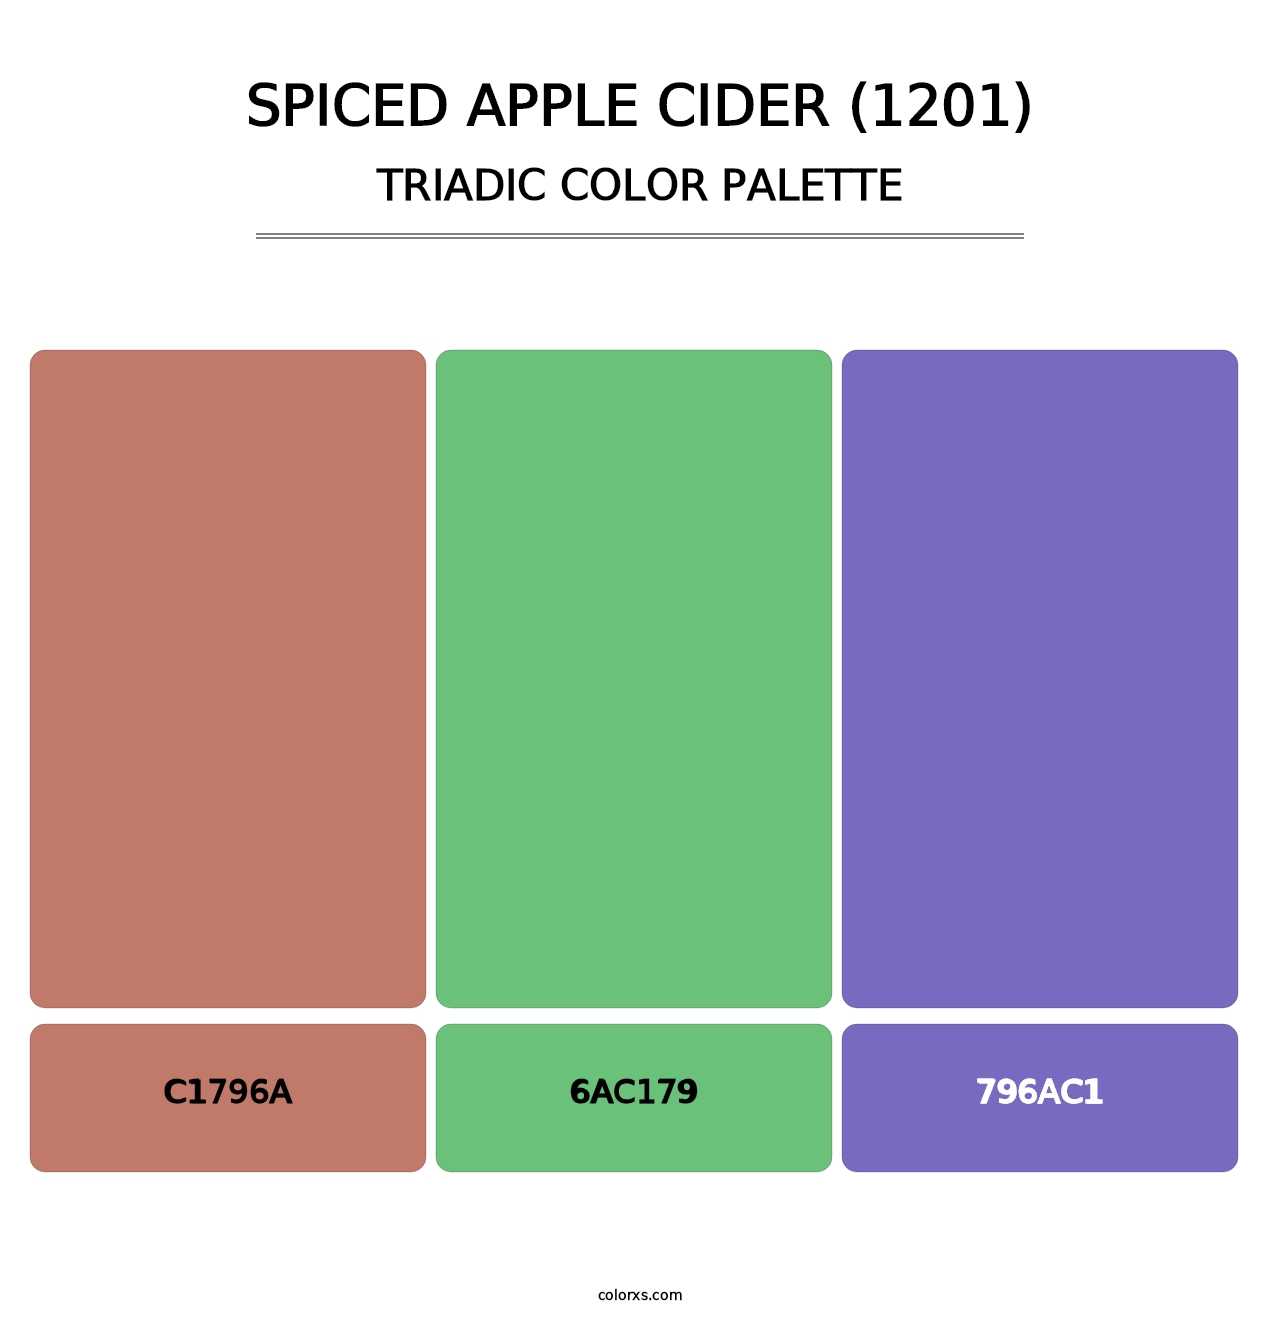 Spiced Apple Cider (1201) - Triadic Color Palette